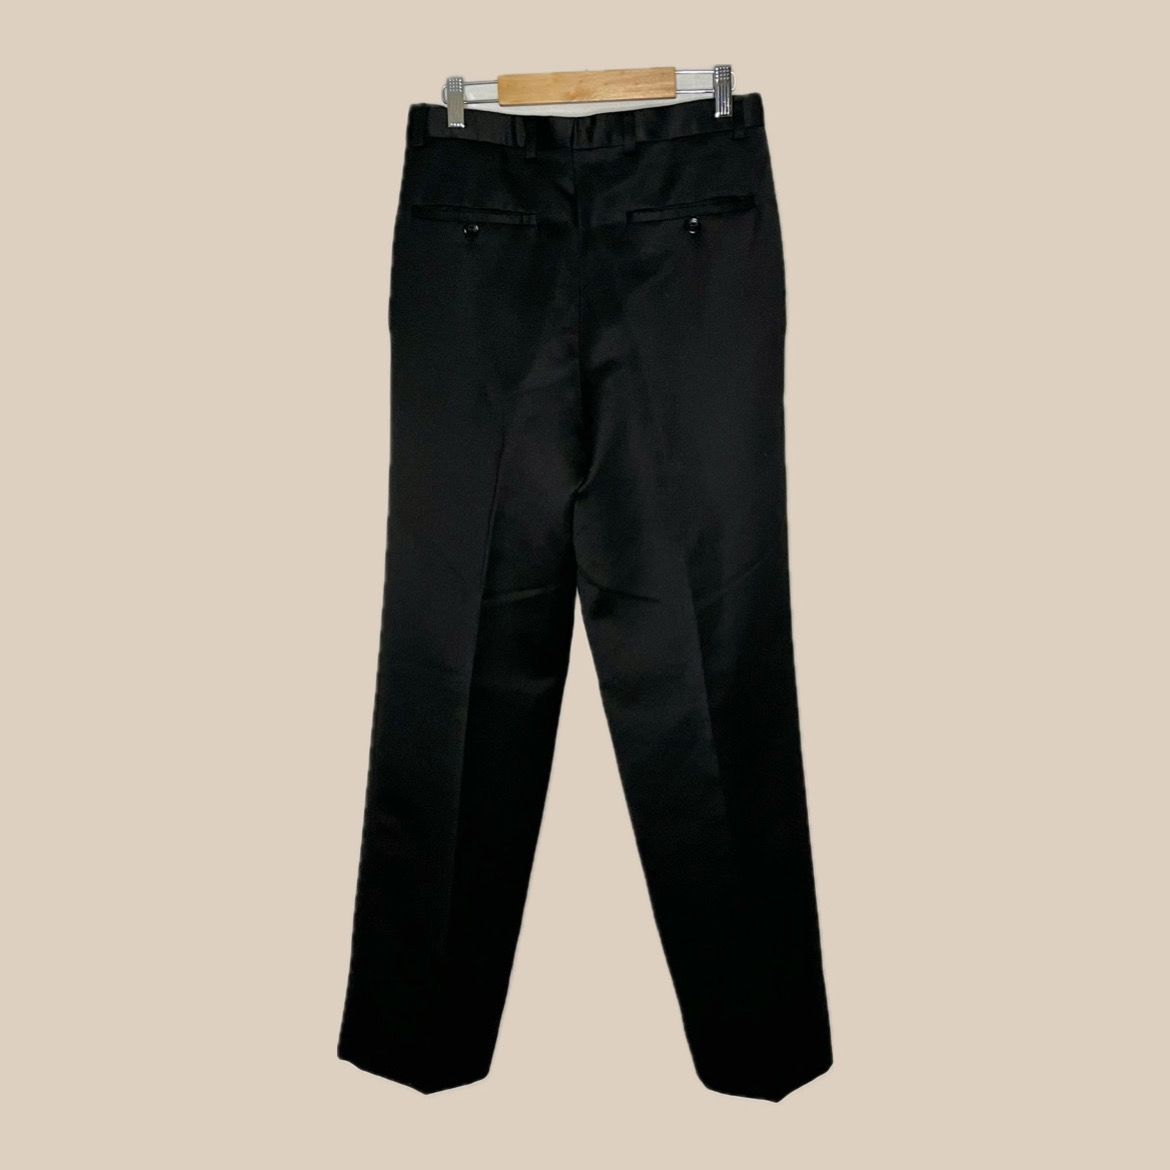 Vintage black pants